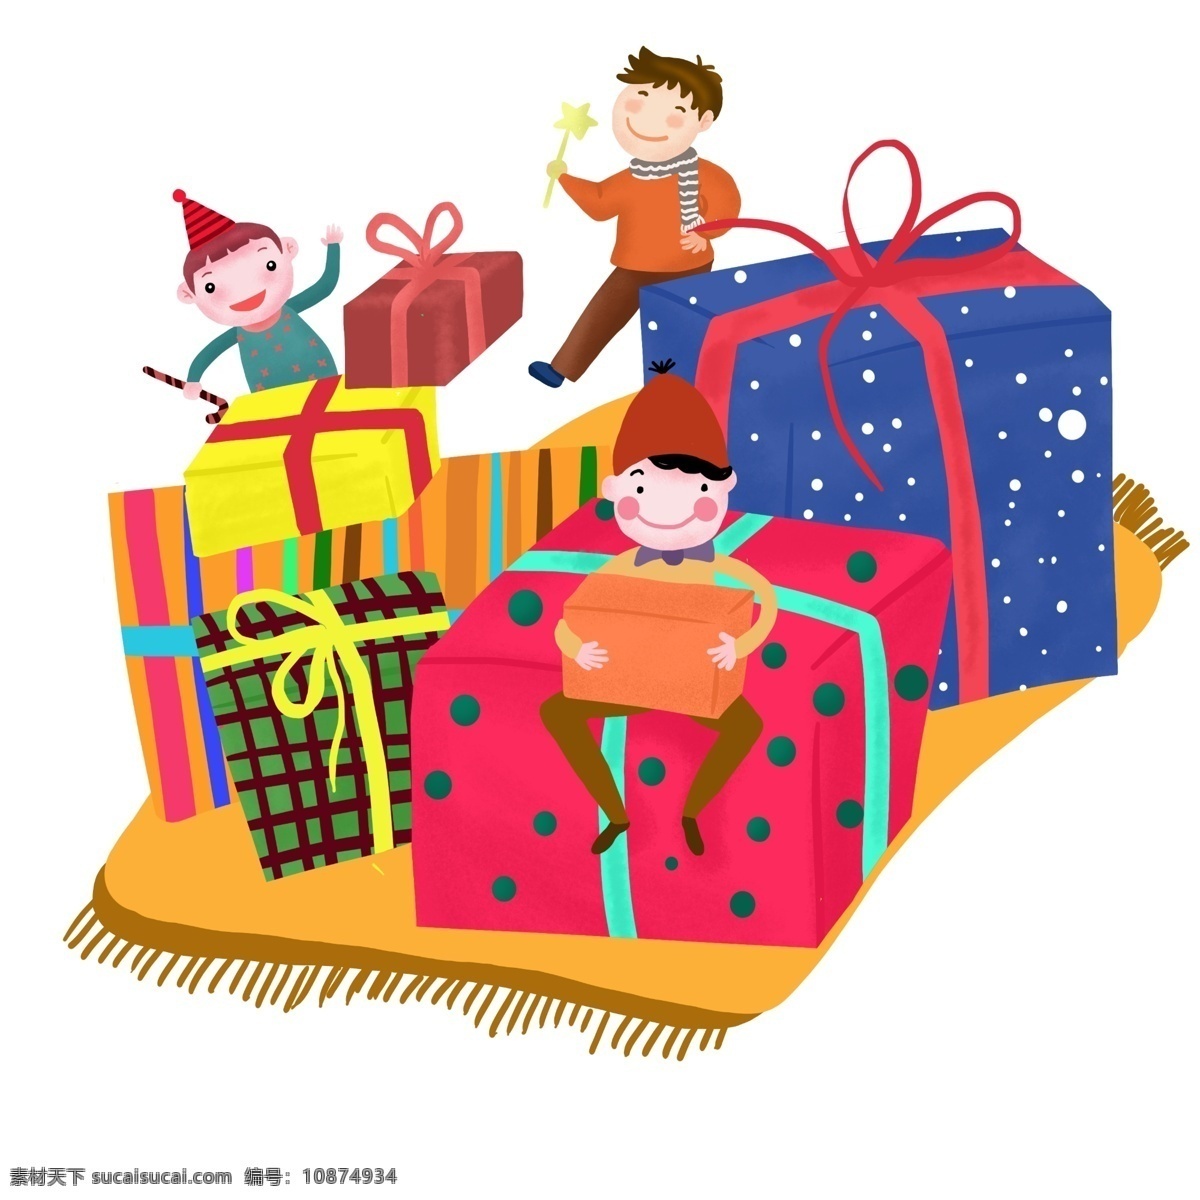 手绘 圣诞节 礼物 插画 礼物盒 手绘人物 蓝色 圣诞节礼物 礼物盒插画 手绘礼物盒 插图